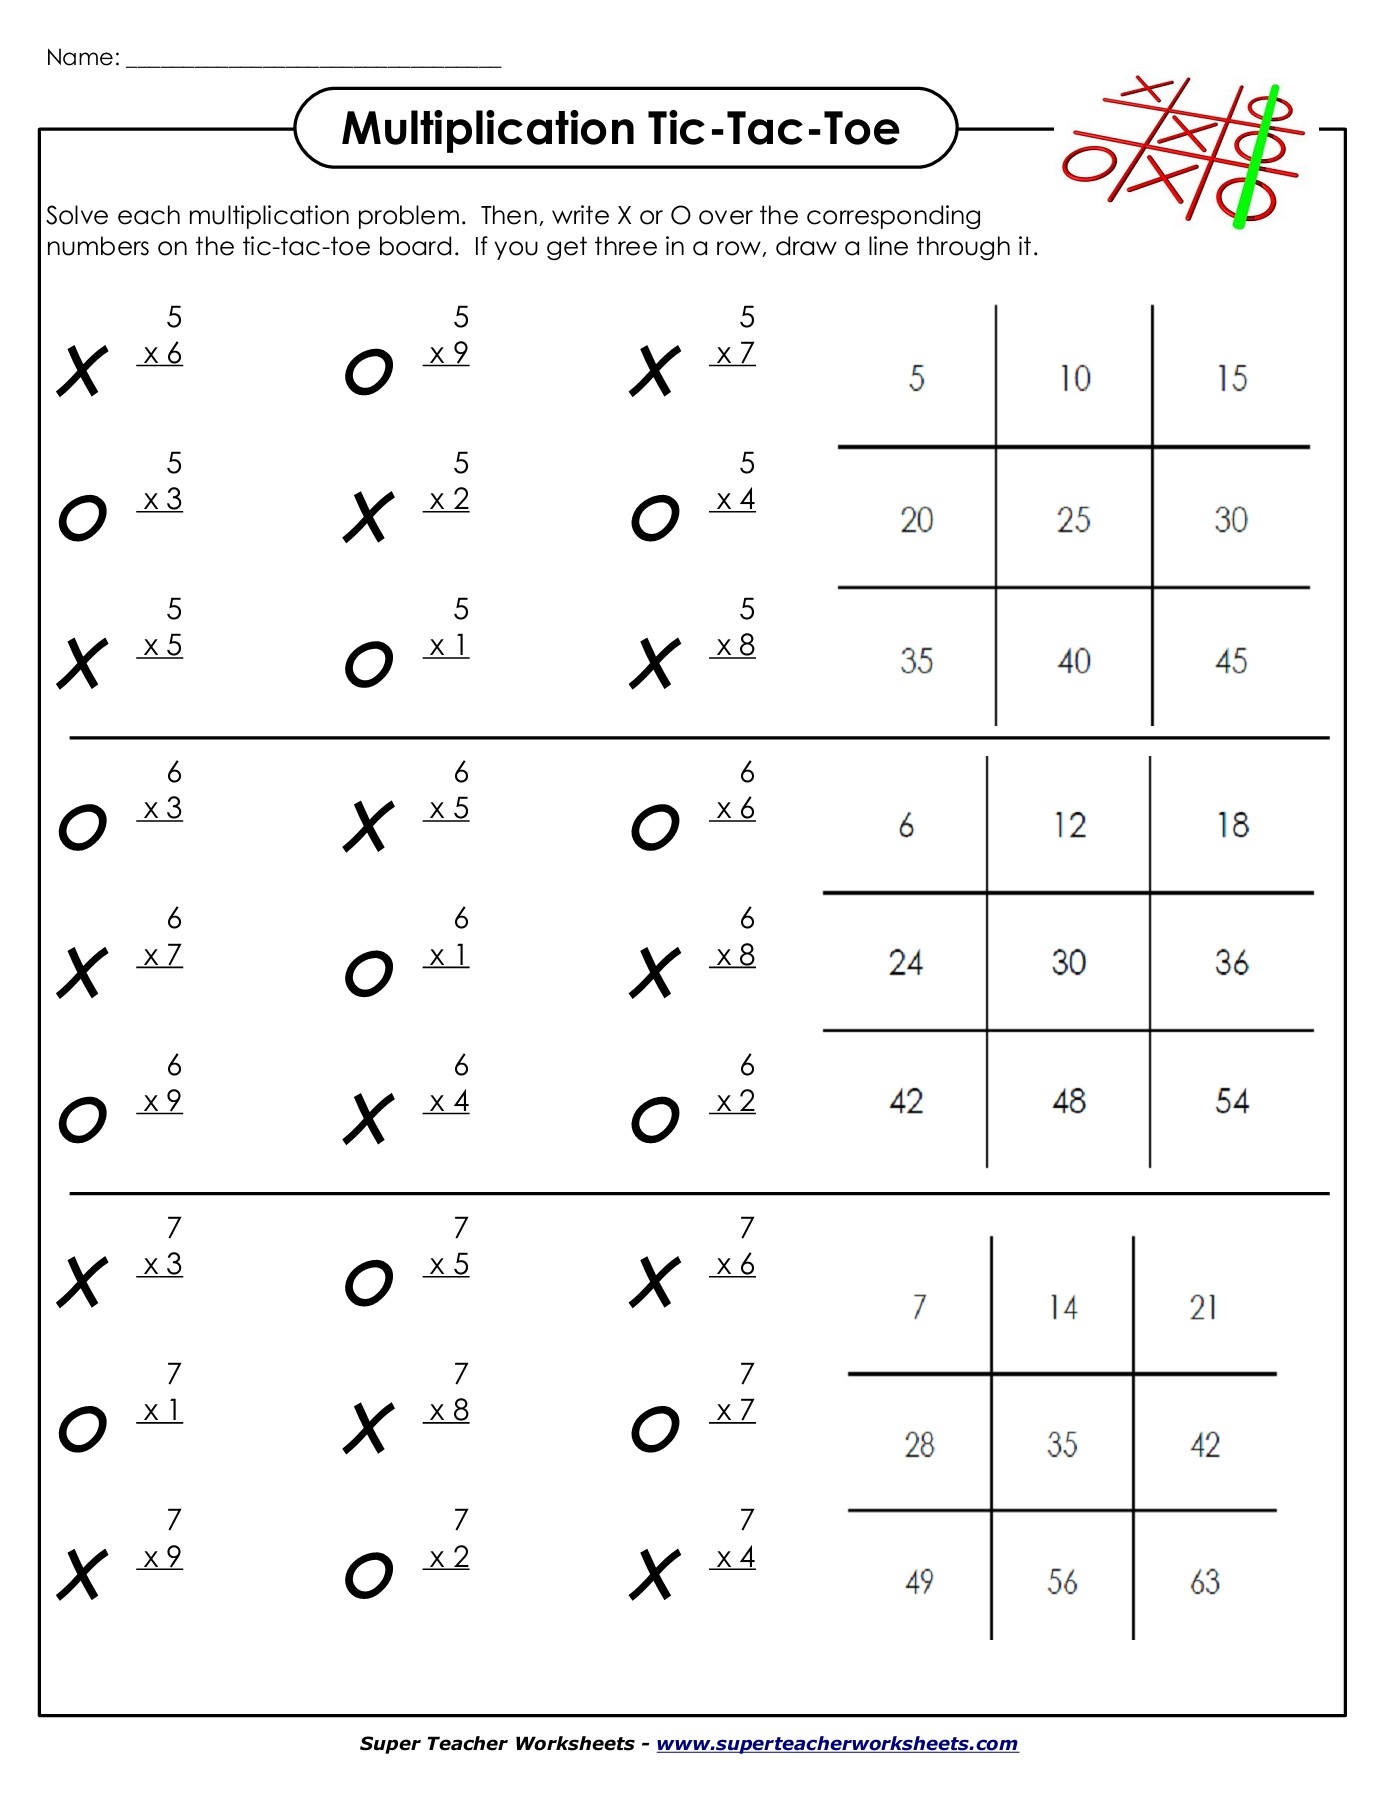 Name Multiplication Tic Tac Toe Super Teacher Worksheets Flip EBook Pages 1 8 AnyFlip